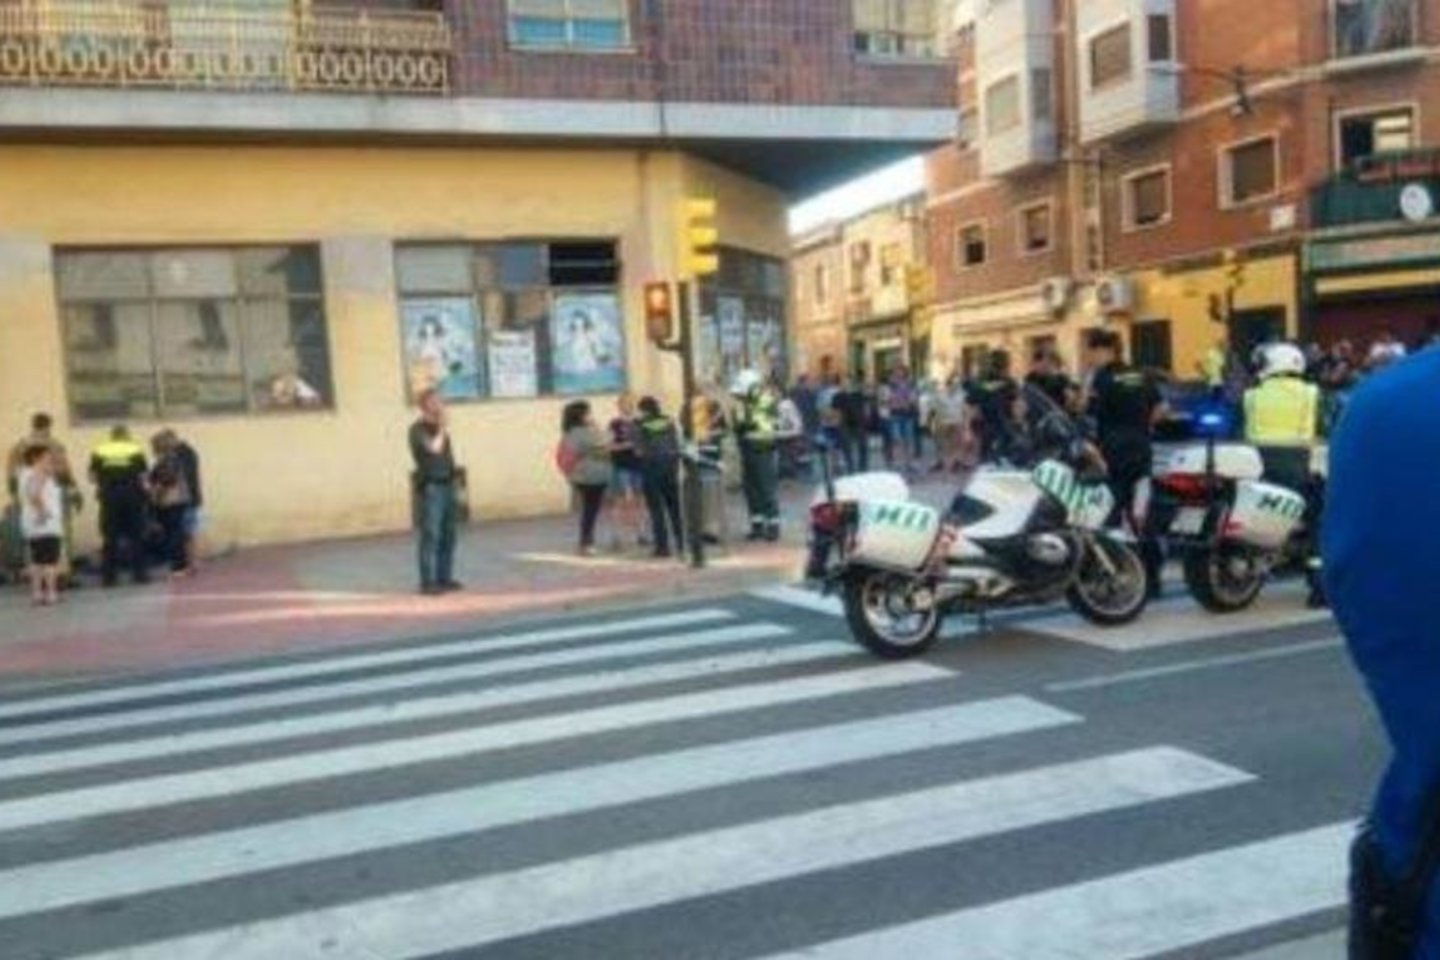 Ispanijos saragosos mieste automobilis rėžėsi į pėsčiuosius. Pranešama, kad sužeisti buvo mažiausiai trys žmonės. <br> Twitter nuotr.